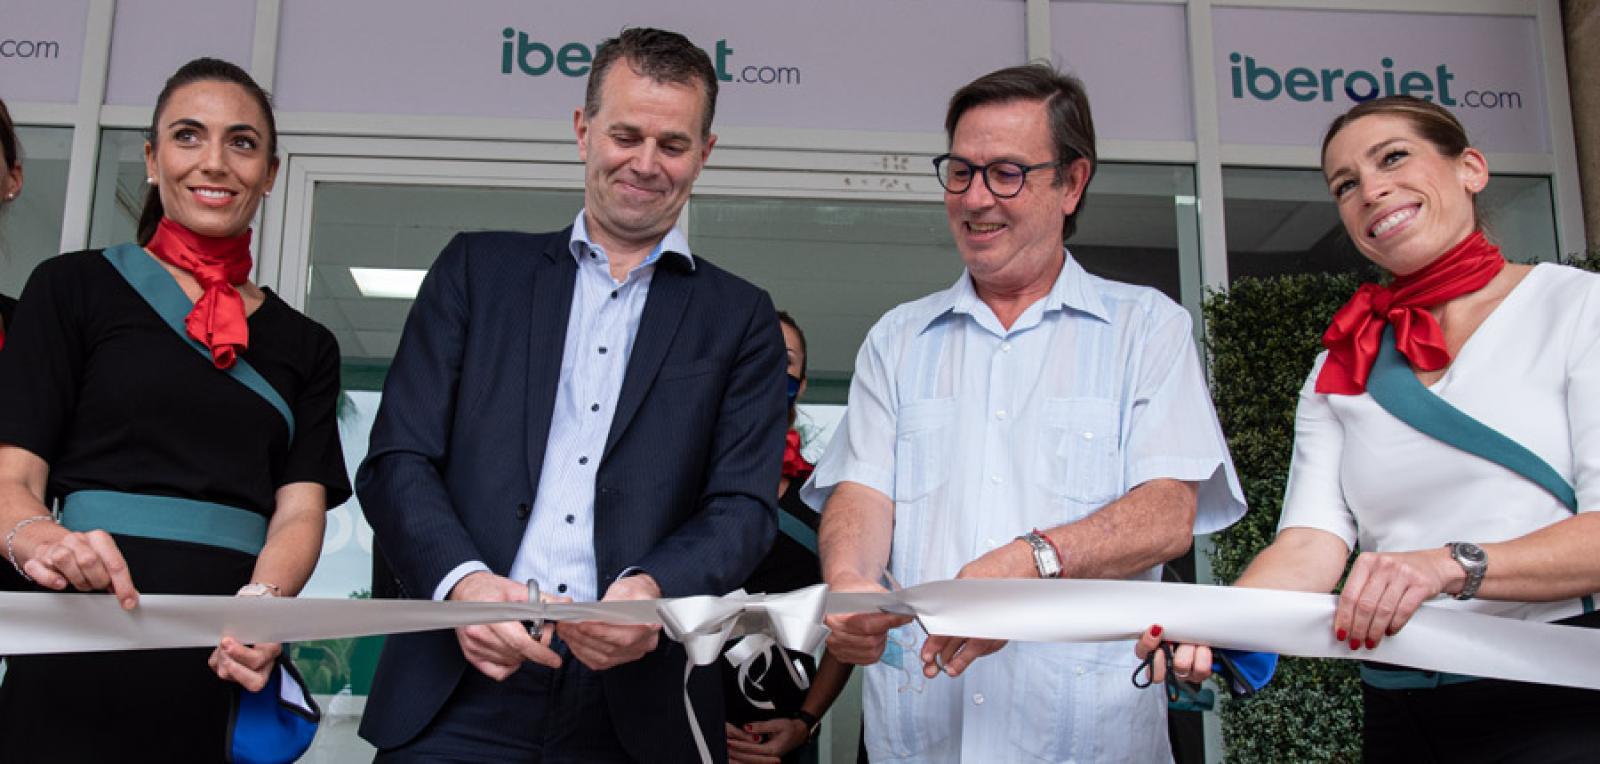 Iberojet airline opens office in Cuba